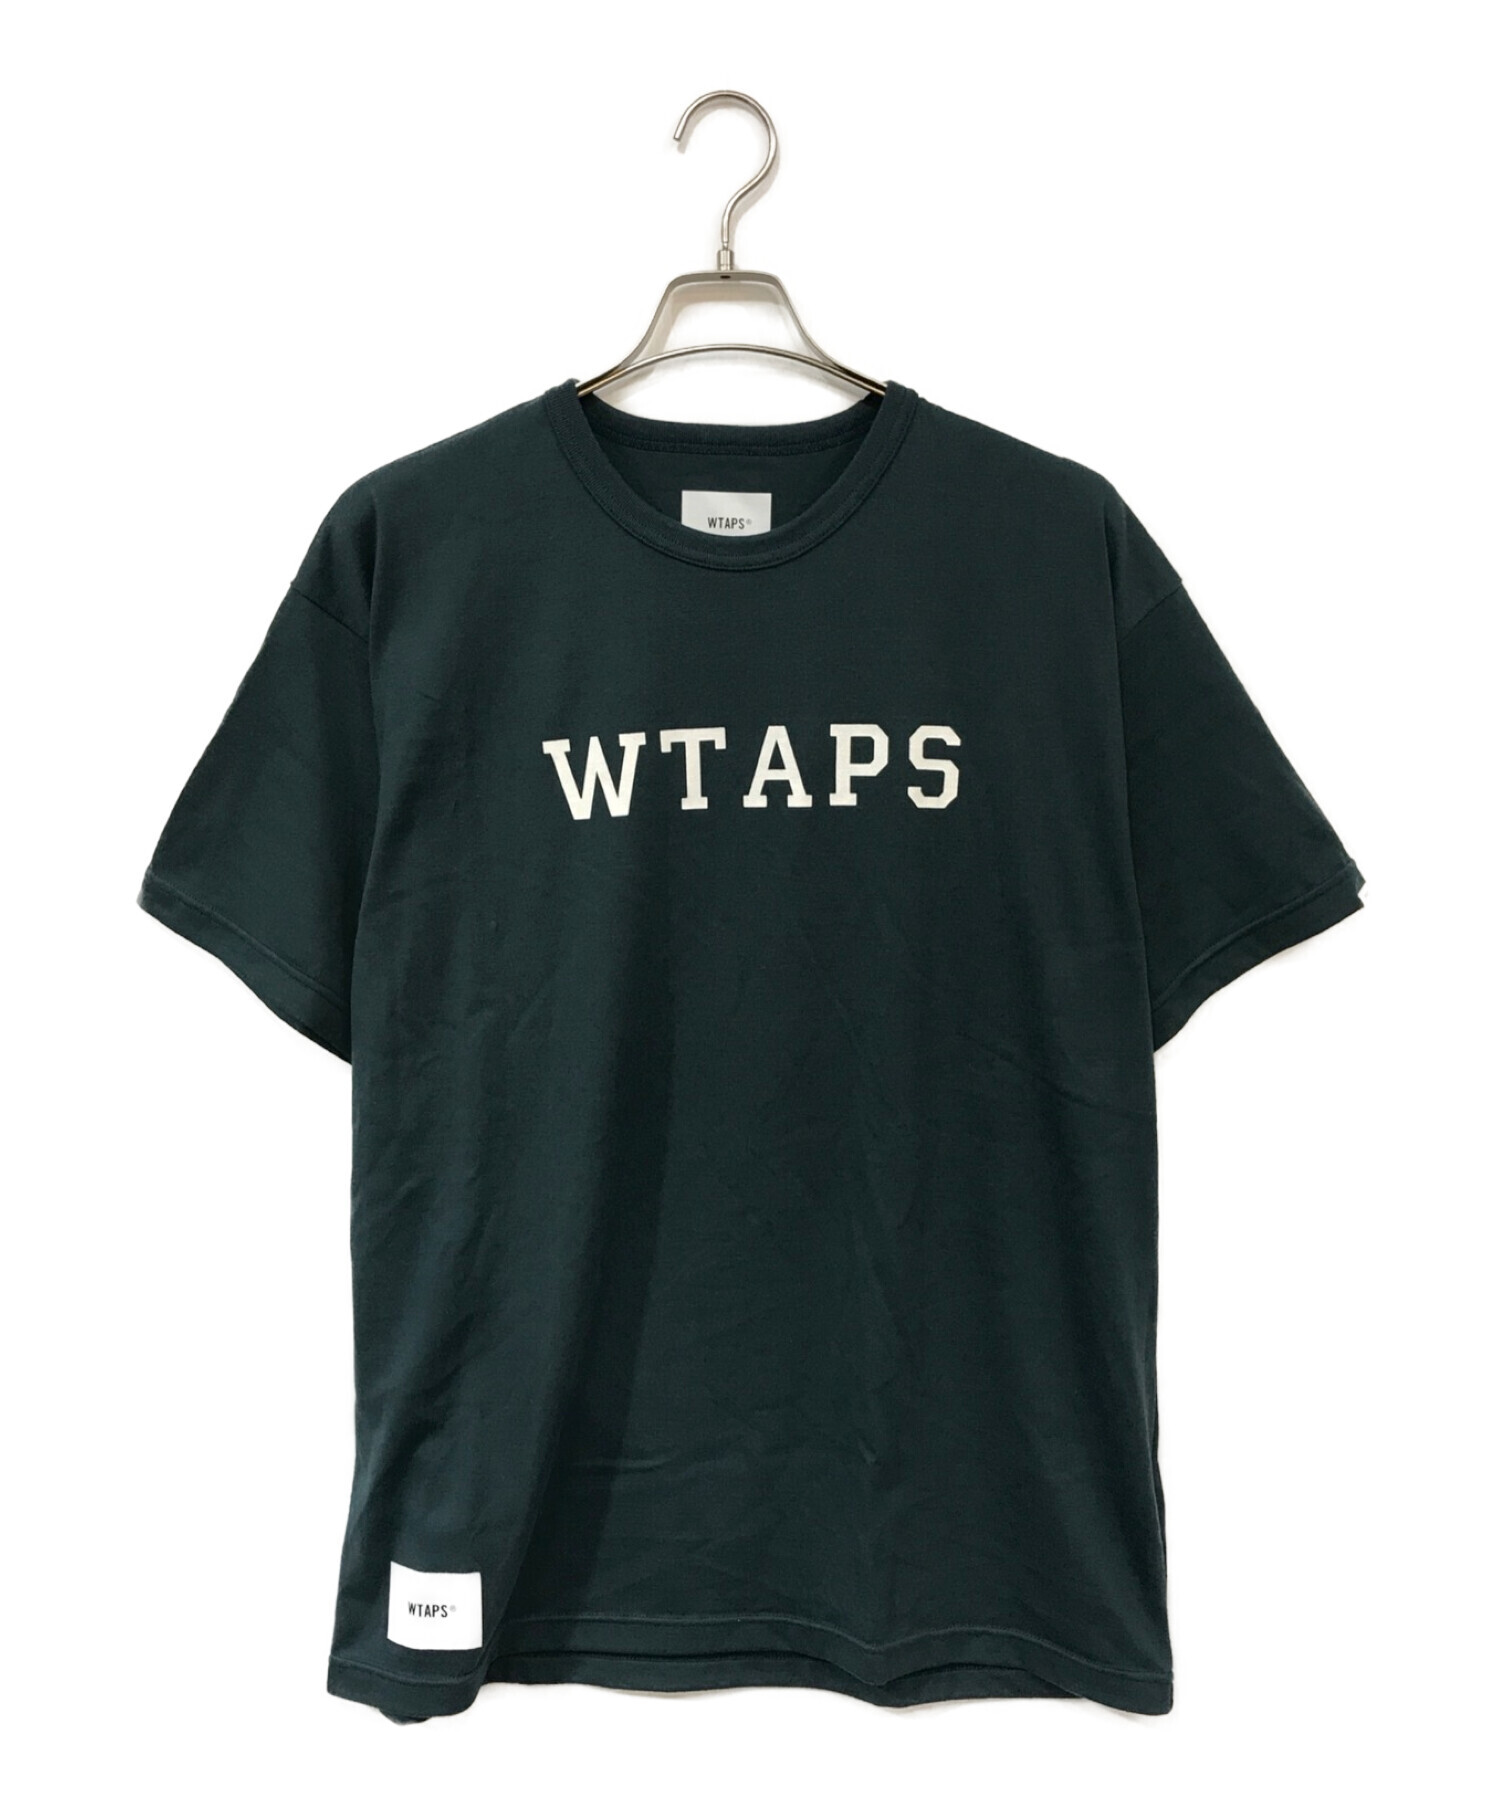 WTAPS (ダブルタップス) ロゴプリントTシャツ グリーン×ホワイト サイズ:Ⅹ 02